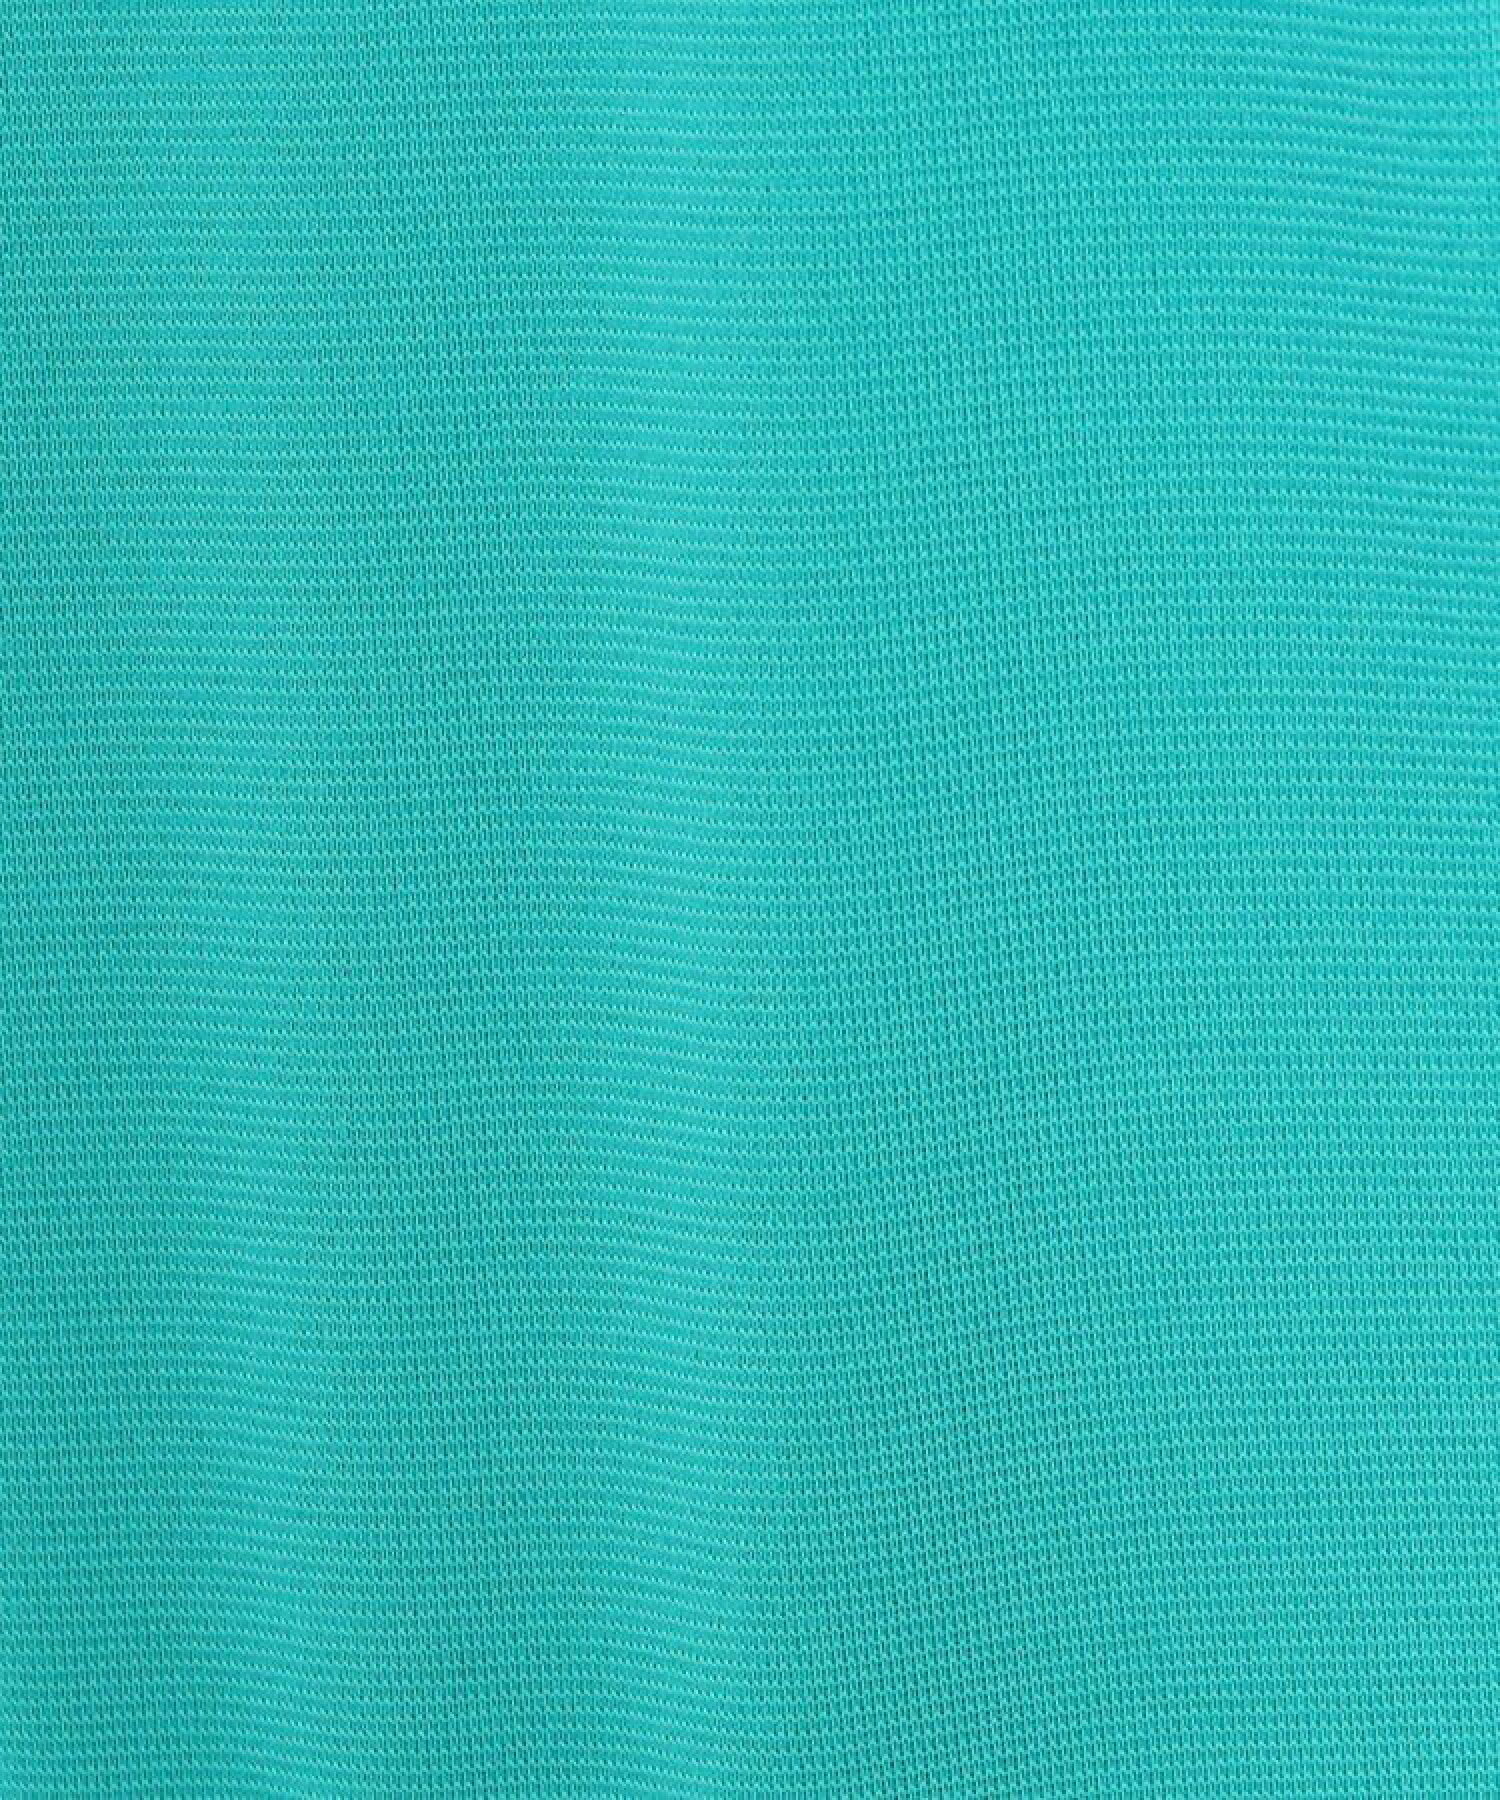 【吸水速乾/UVカット】ラインストーンロゴデザイン モックネック半袖プルオーバー